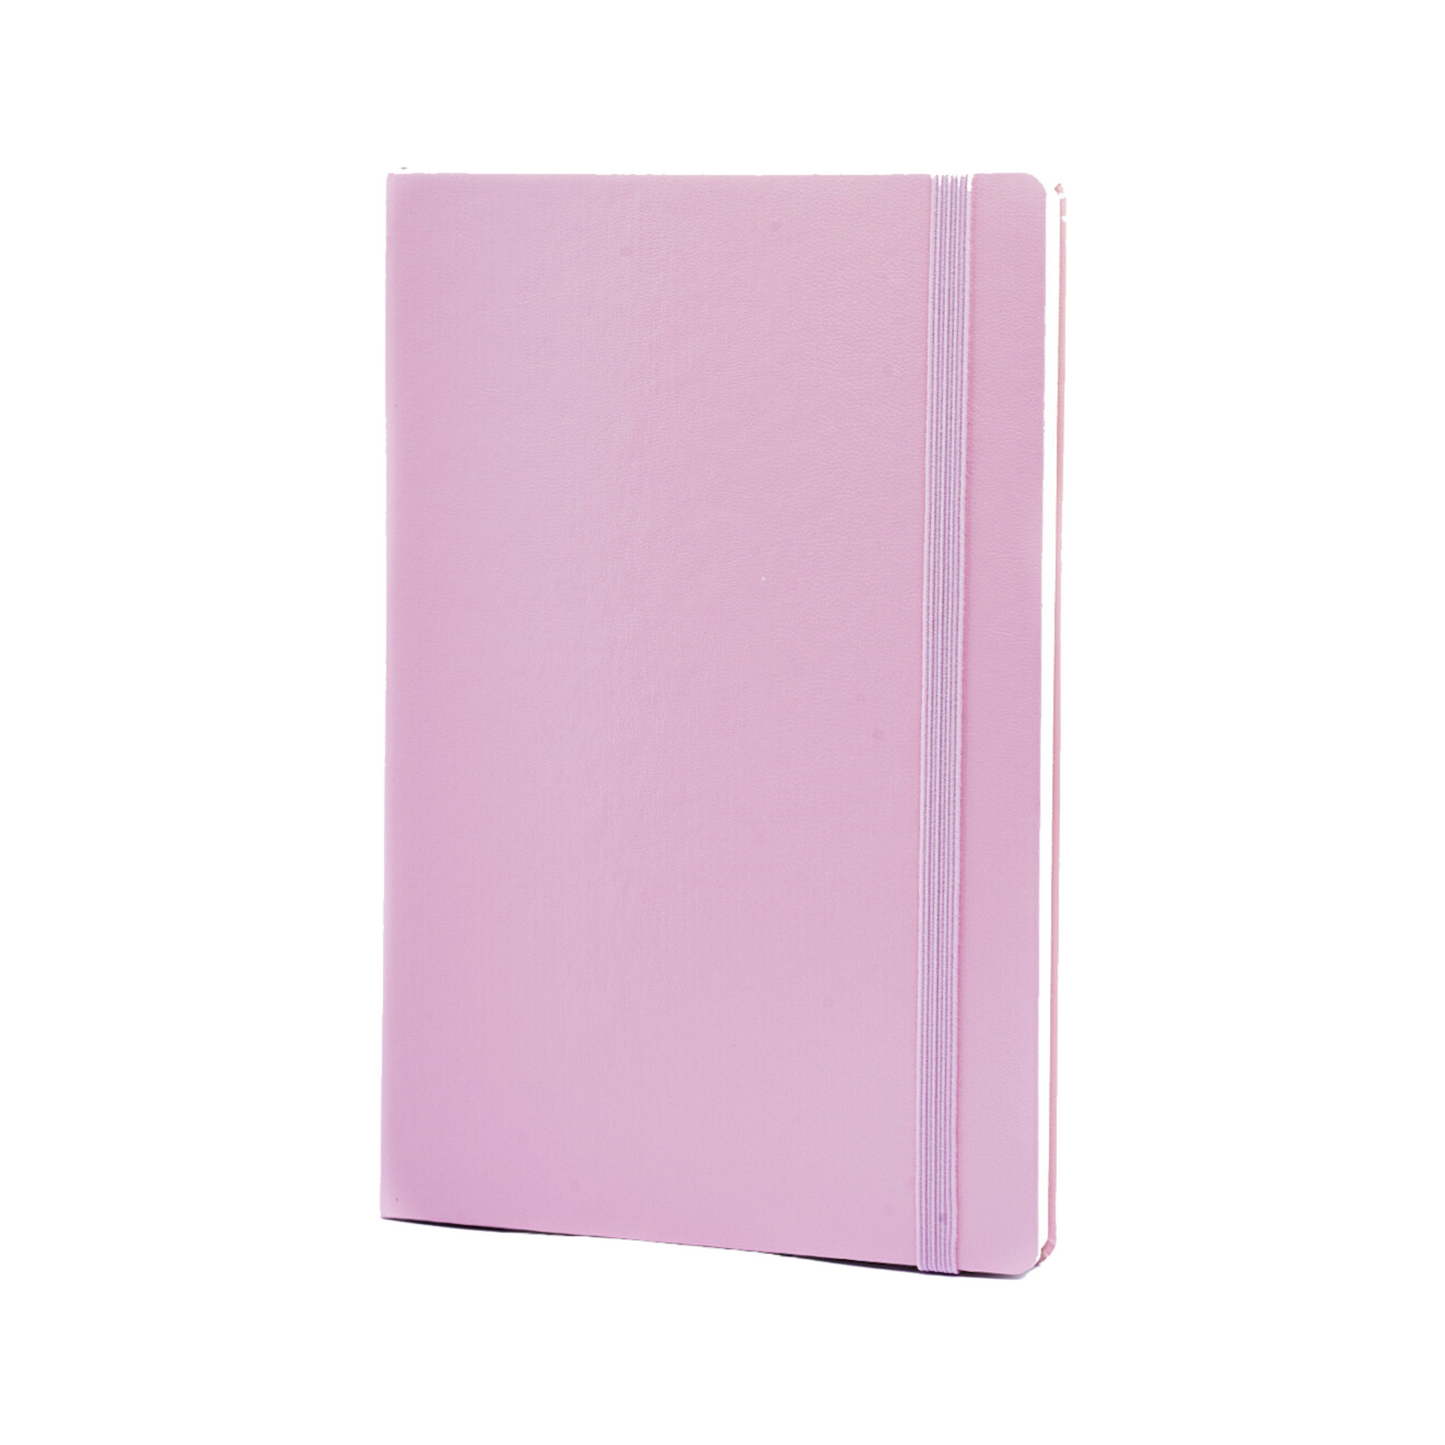 Light Pink Journal